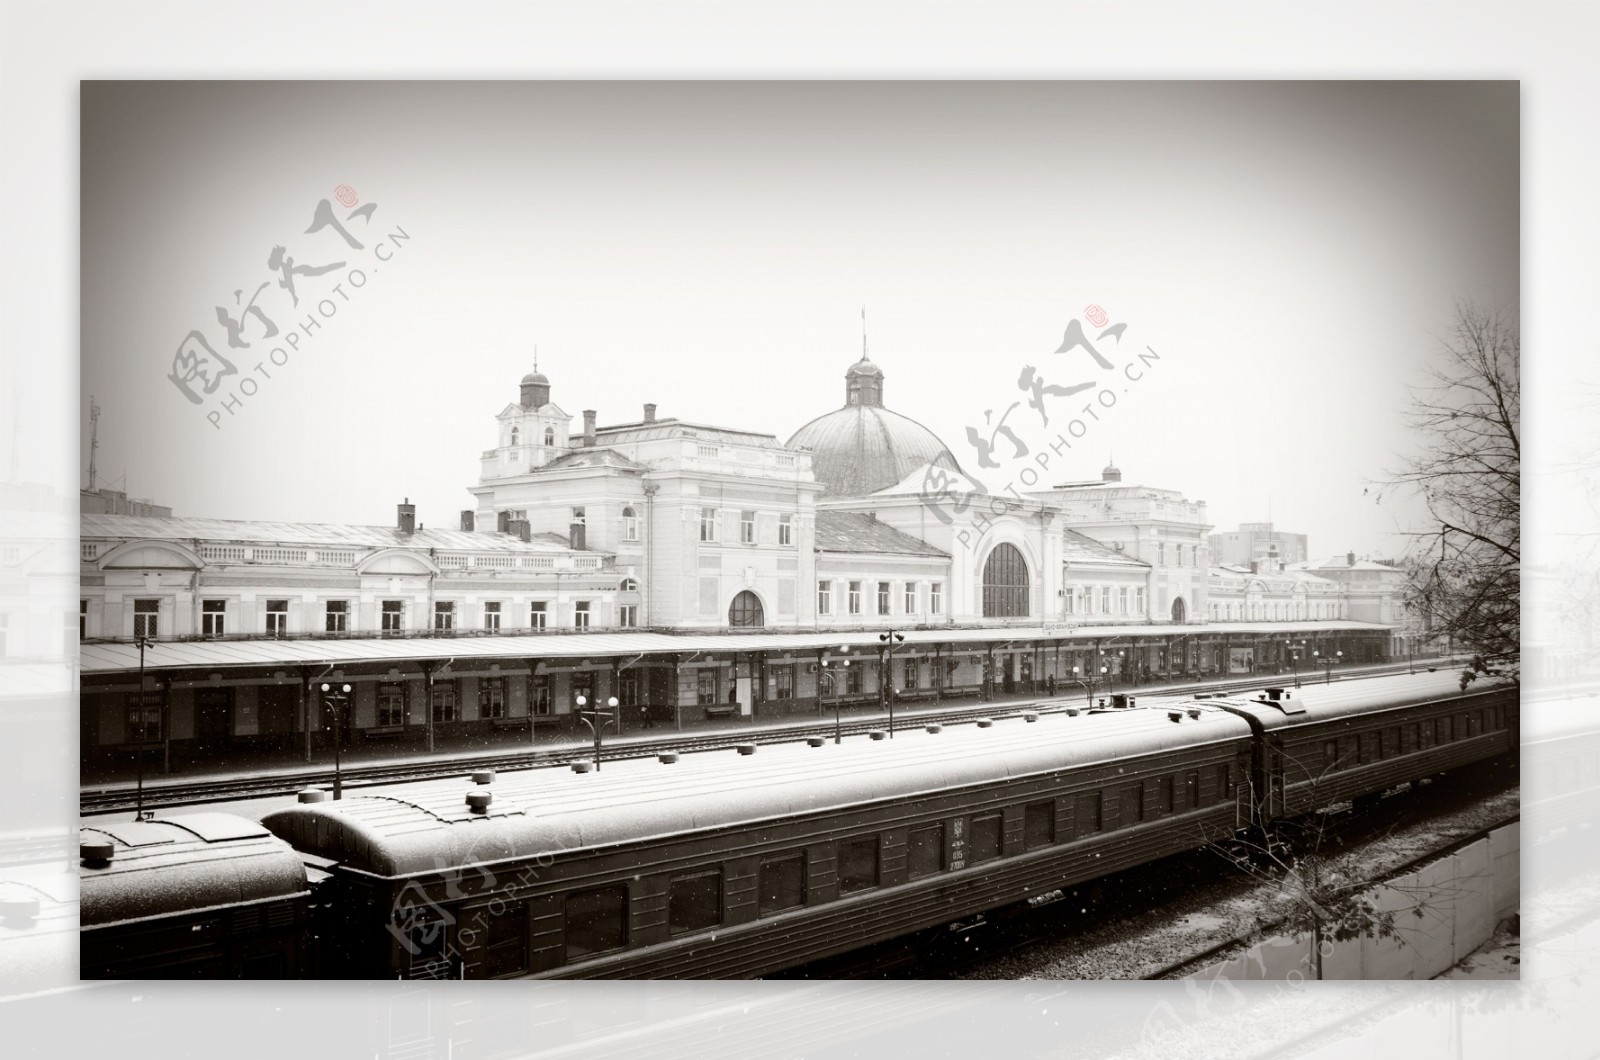 火车站雪景风光图片